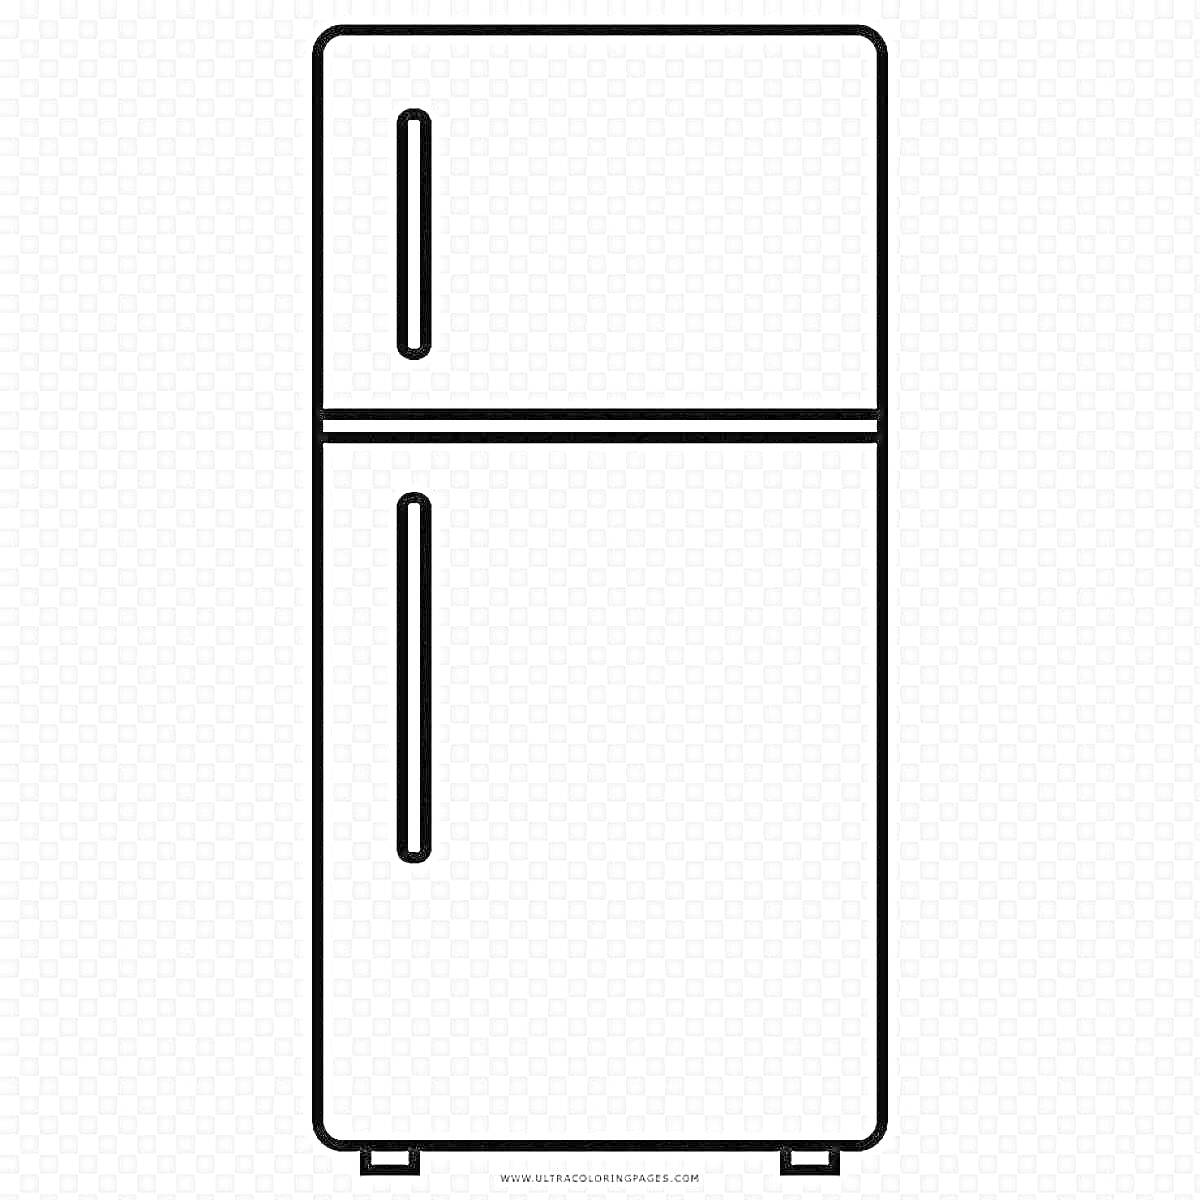 Раскраска с изображением холодильника с верхней и нижней дверцами, каждая из которых имеет длинную вертикальную ручку